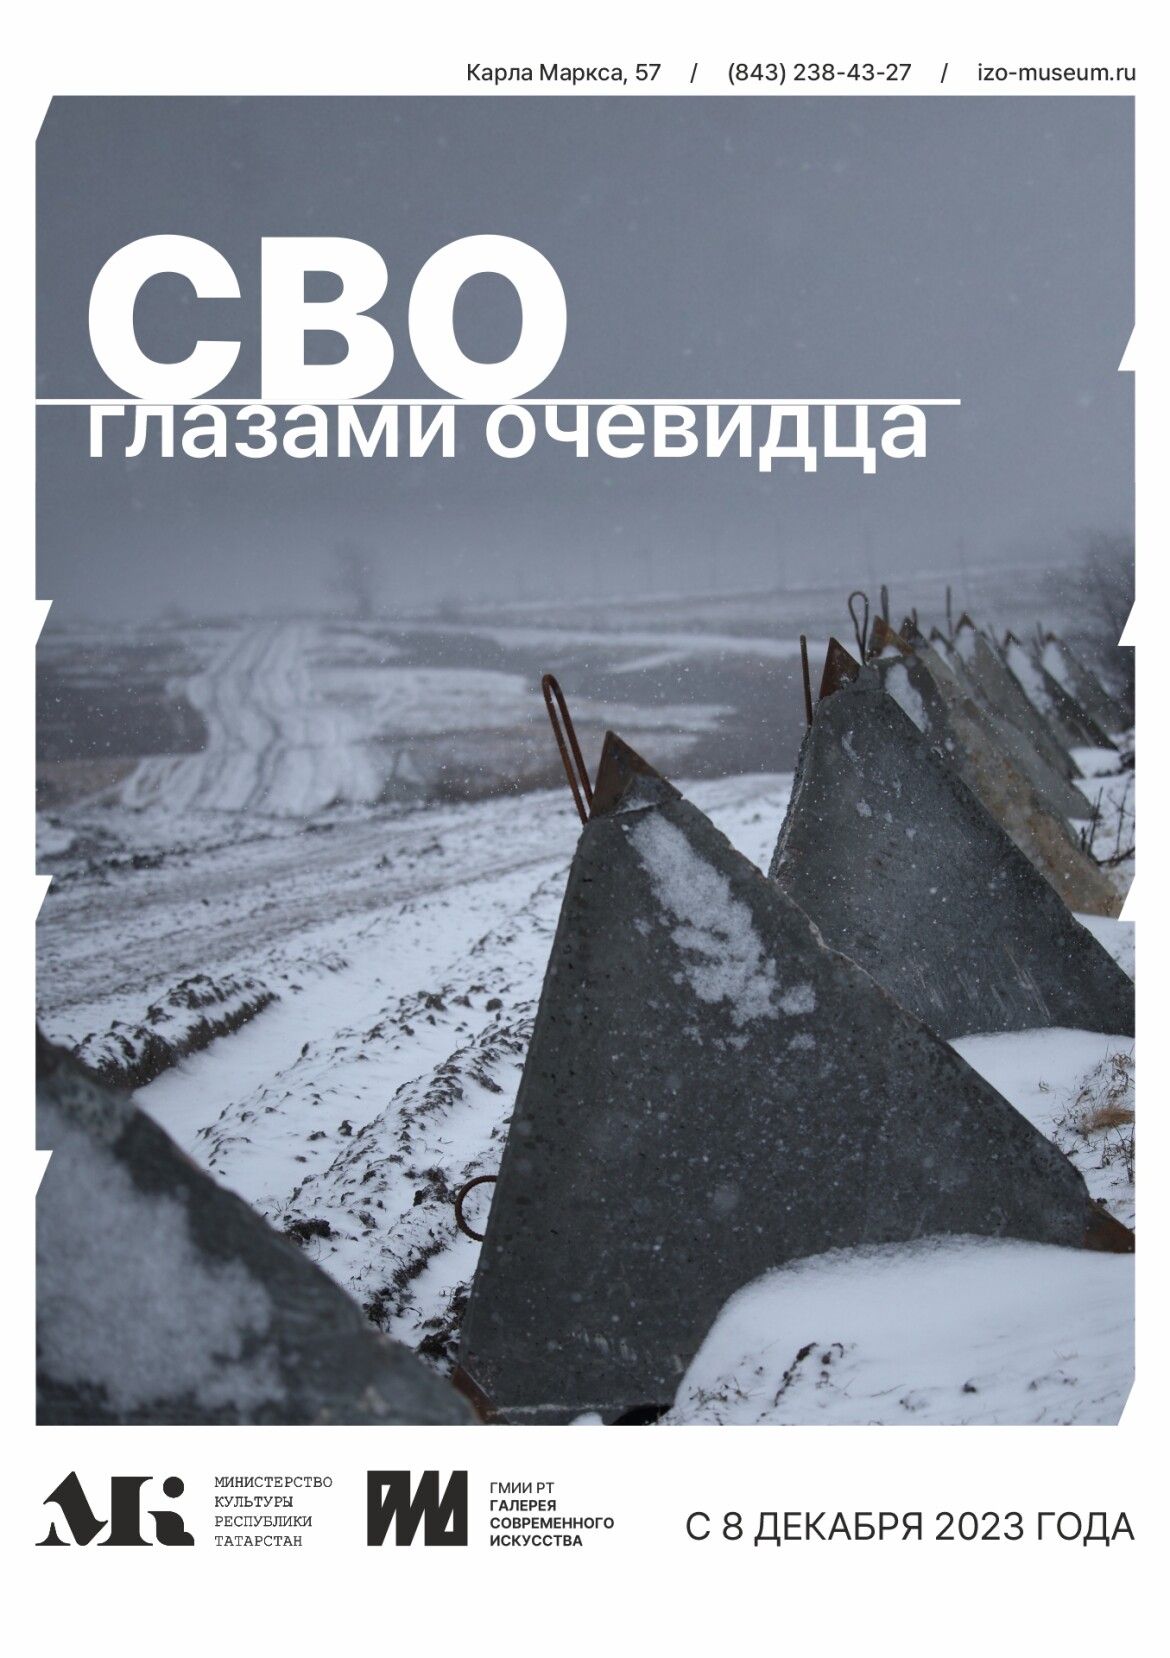 Выставка фотографии «СВО глазами очевидца» будет открыта в Галерее современного искусства, в составе Музея ИЗО Татарстана, 7 декабря